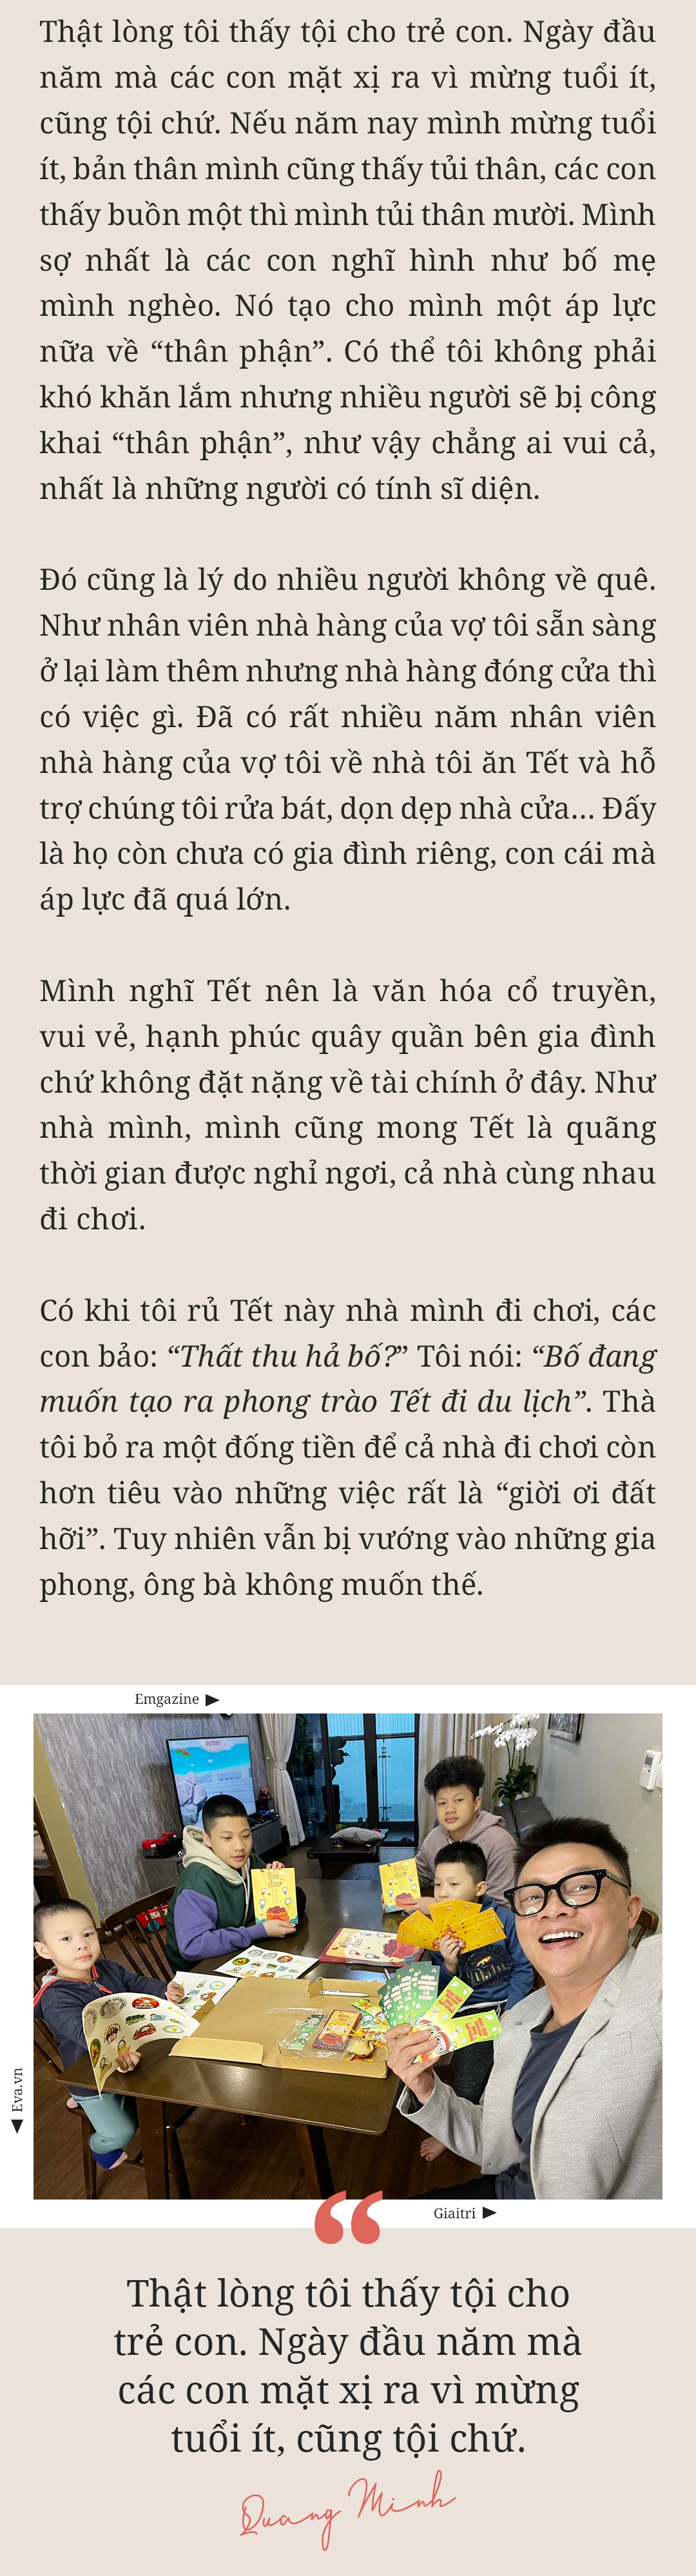 MC Trần Quang Minh: amp;#34;Nếu mừng tuổi ít, các con thấy buồn một thì mình tủi thân mườiamp;#34; - 34